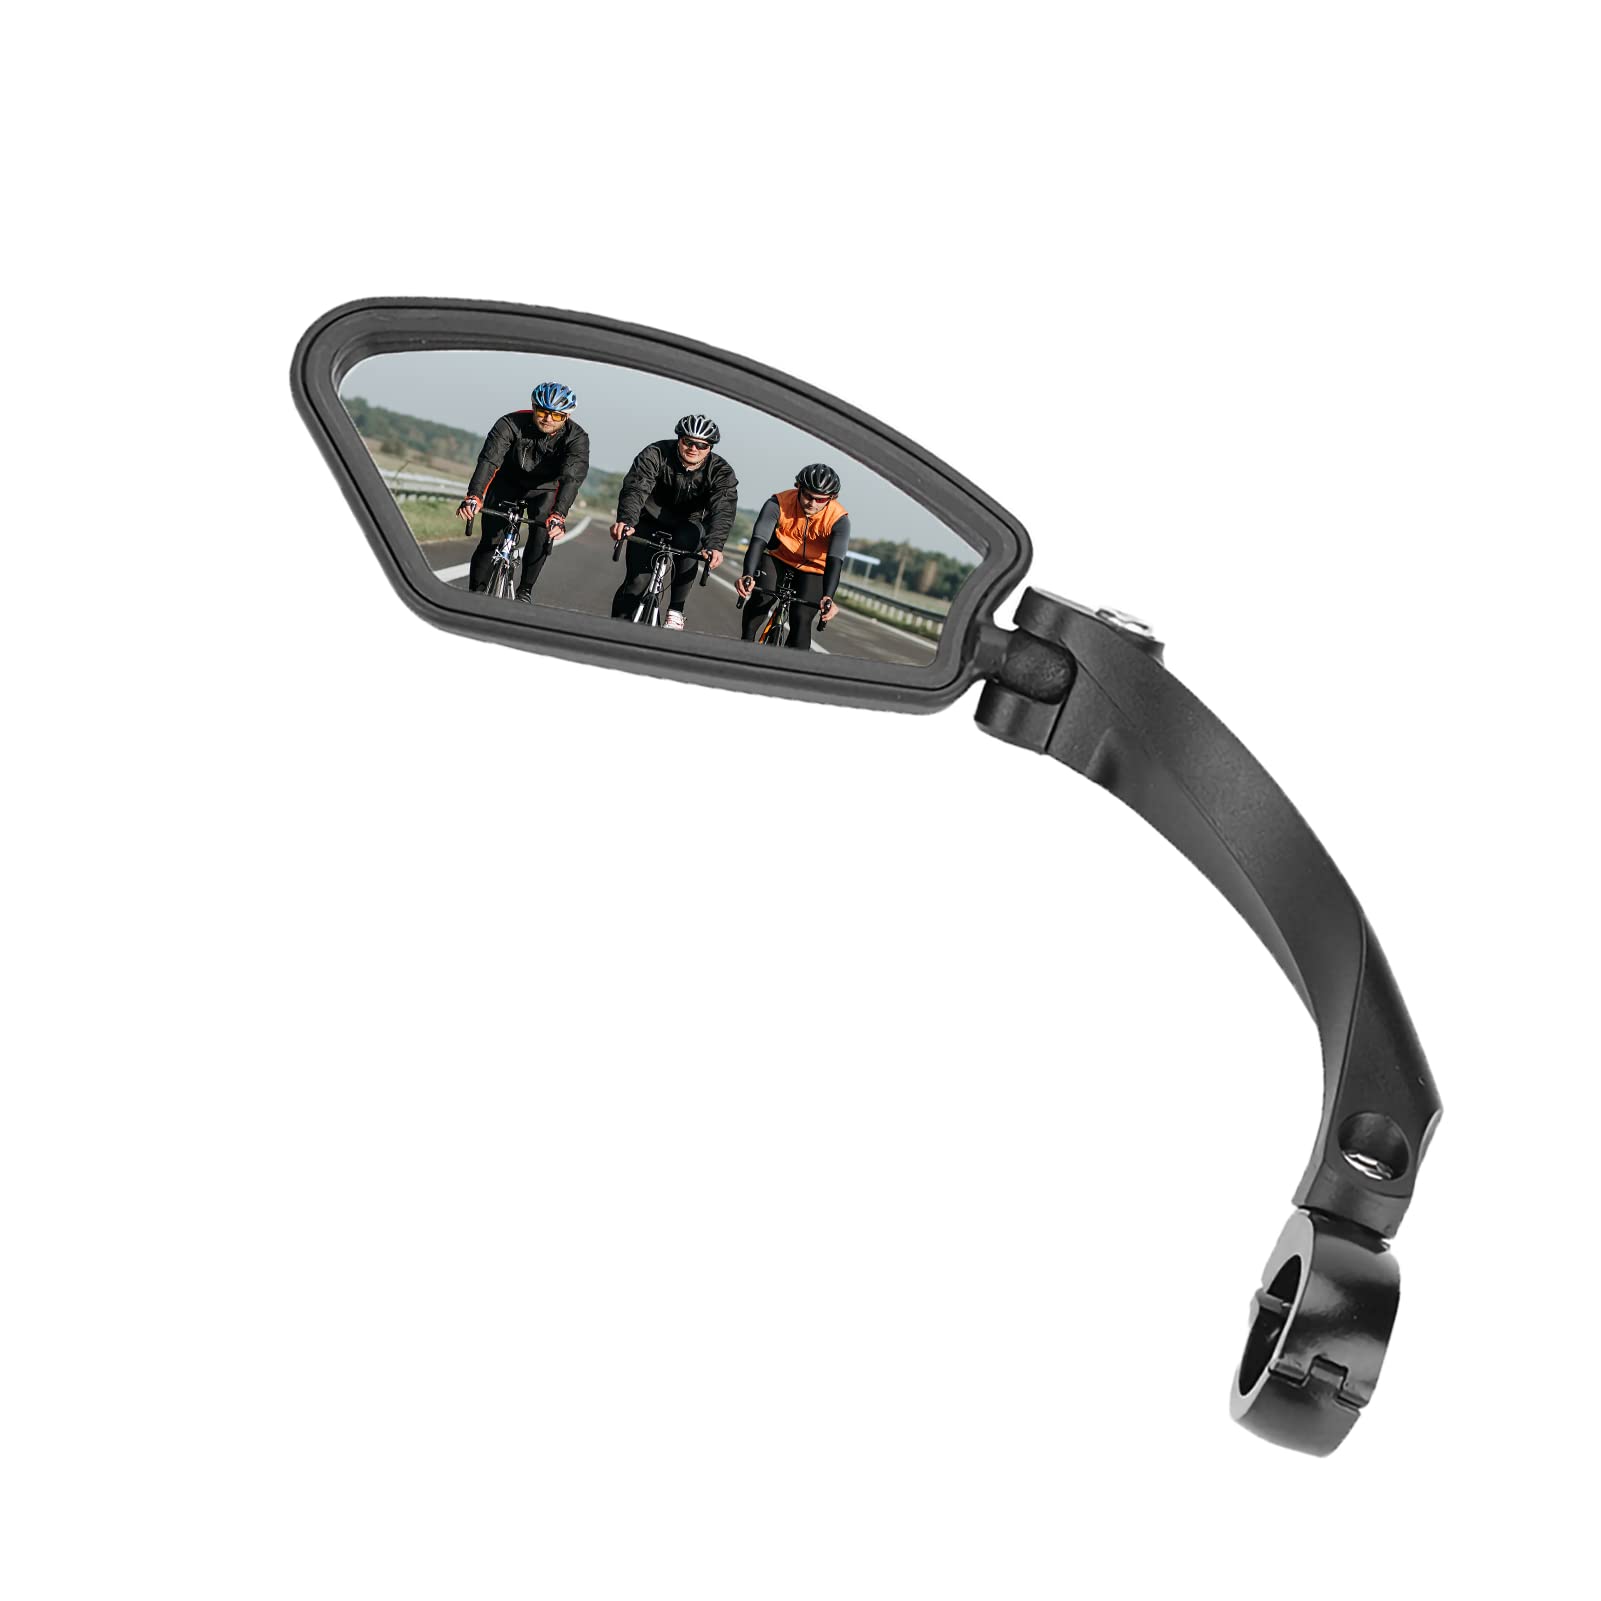 Fahrradrückspiegel, Fahrradspiegel Lenkerrückspiegel, 360° Verstellbarer Lenkerendspiegel Fahrrad, für Griff mit 21-26 Mm Durchmesser, HF-MR080L (linker(Left rearview mirror (HF-MR080L)) von Gugxiom